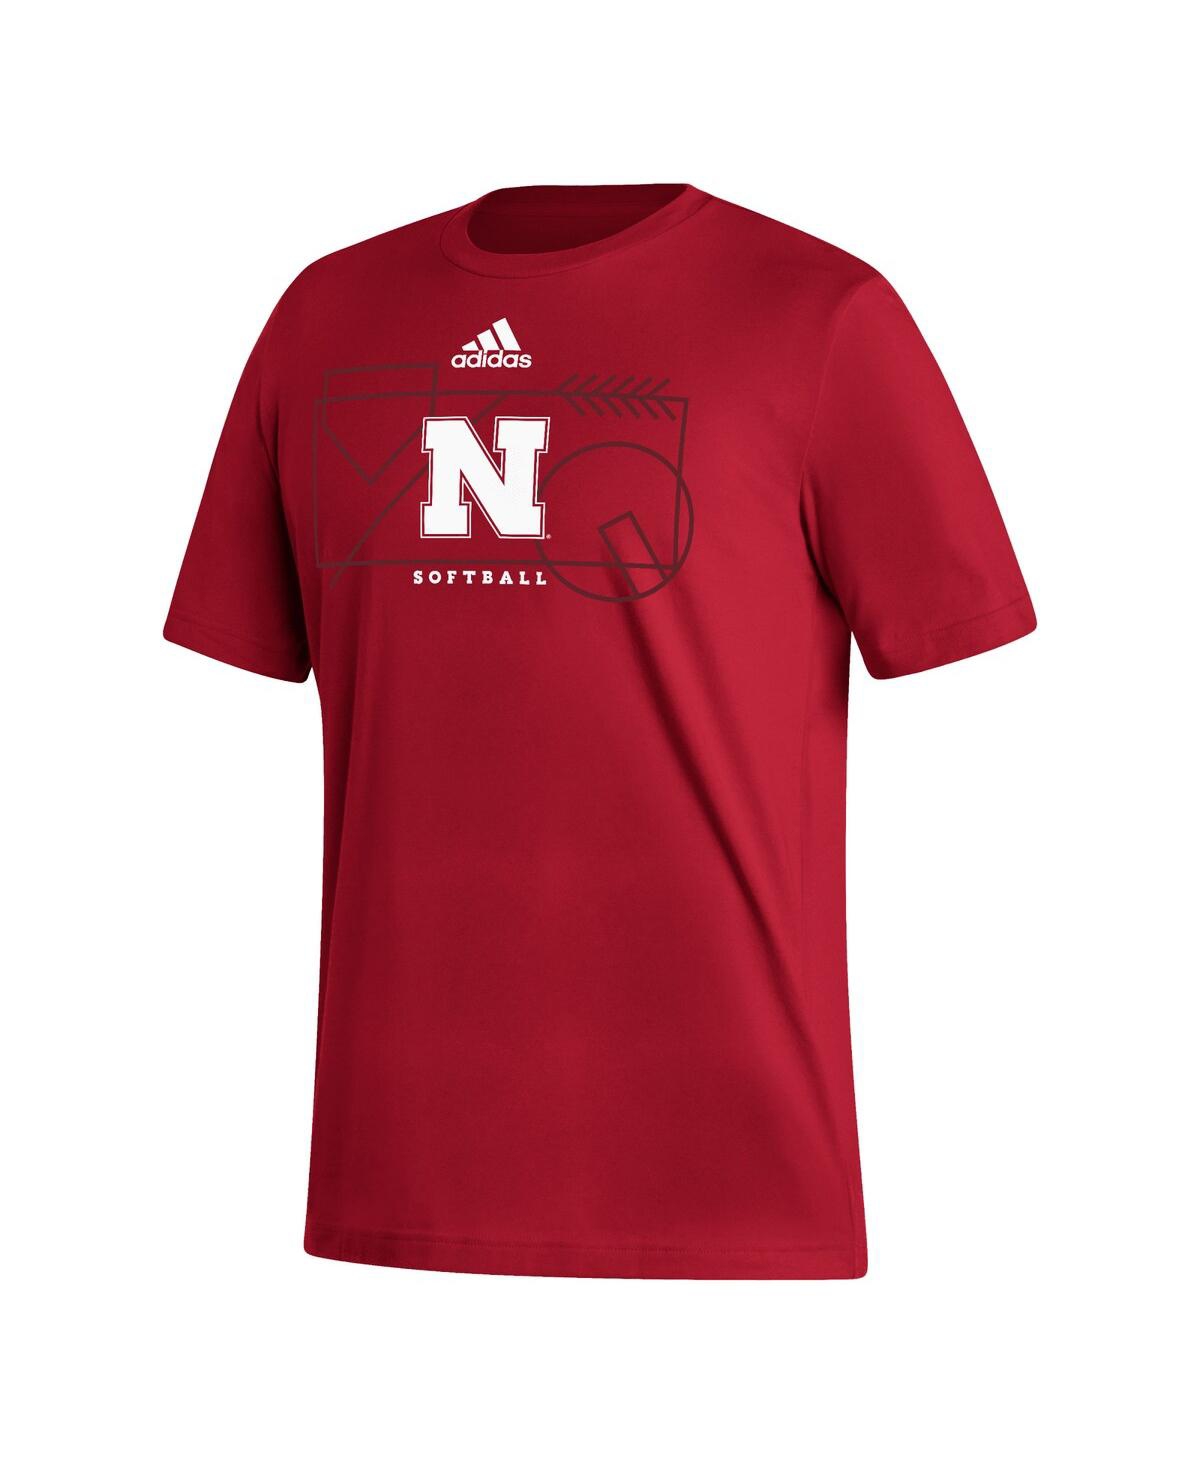 Shop Adidas Originals Men's Adidas Scarlet Nebraska Huskers Locker Lines Softball Fresh T-shirt